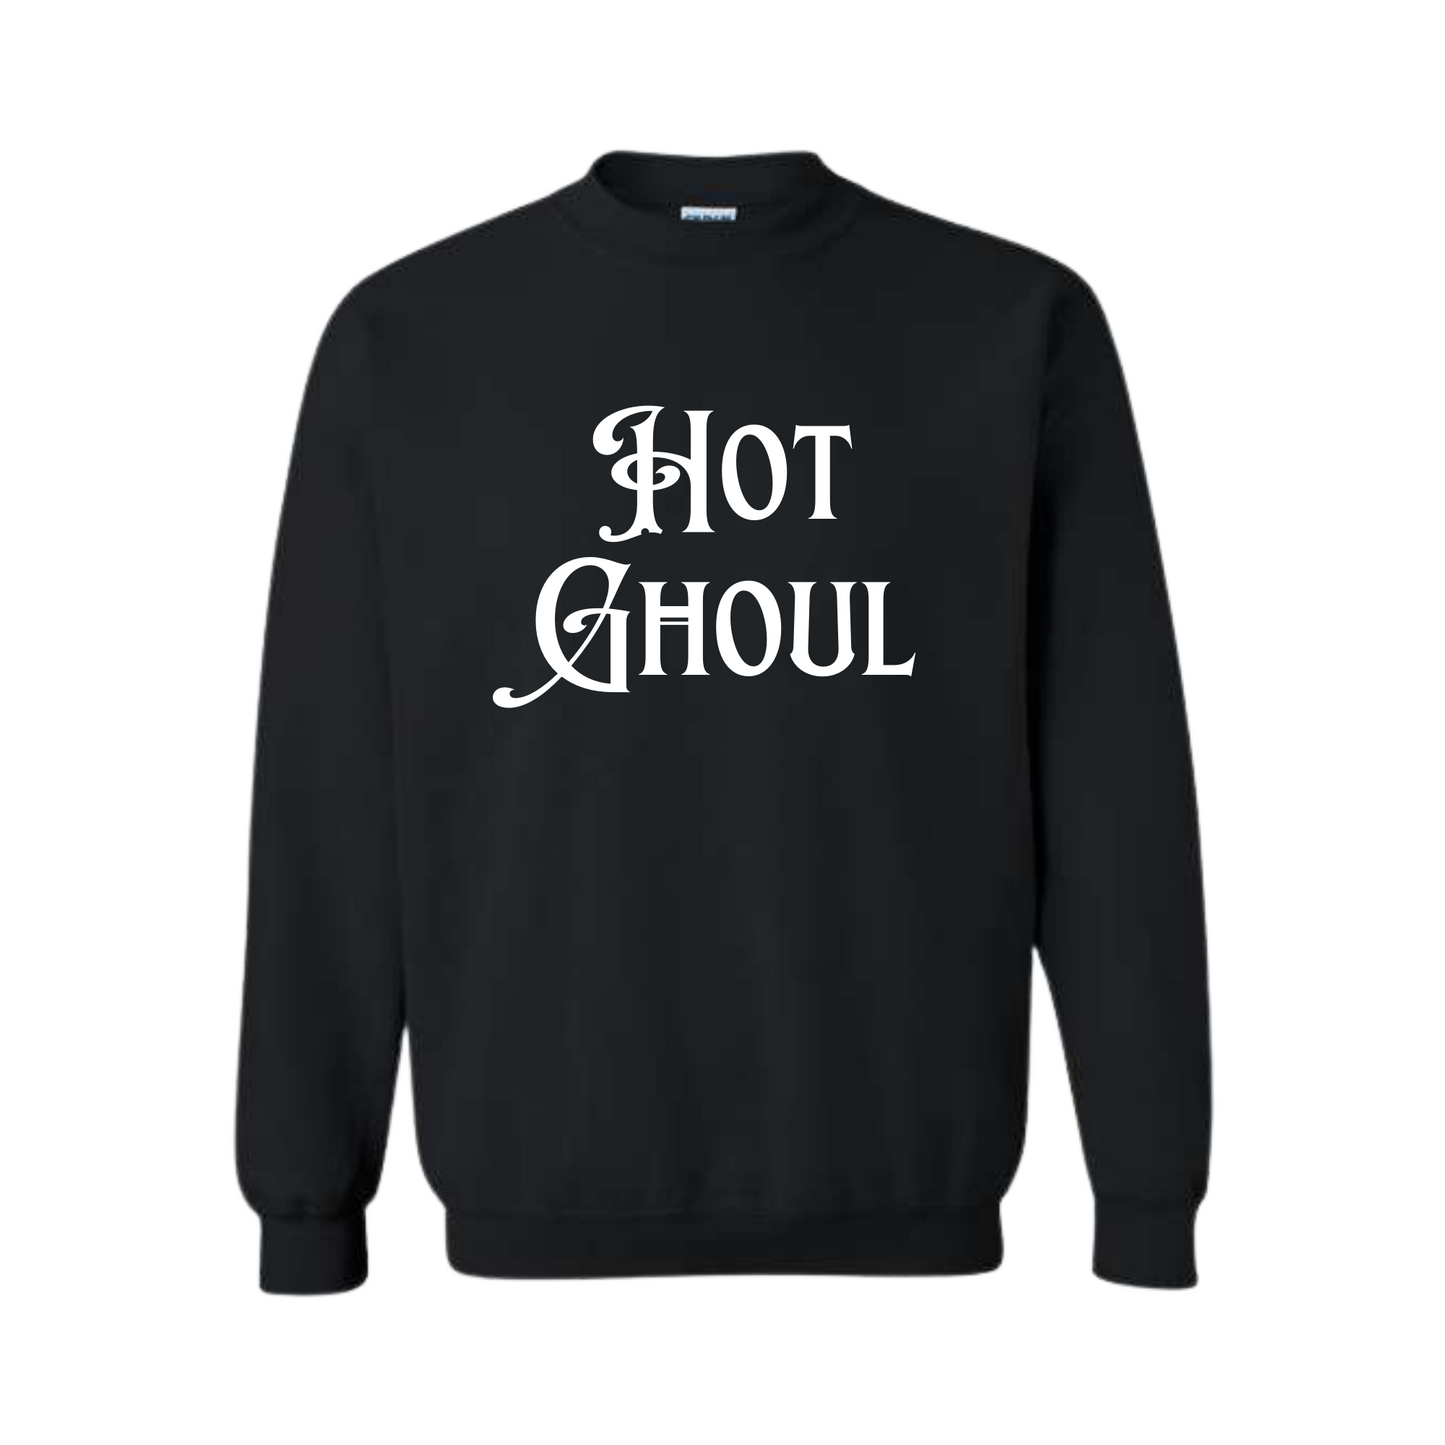 Hot Ghoul Crewneck